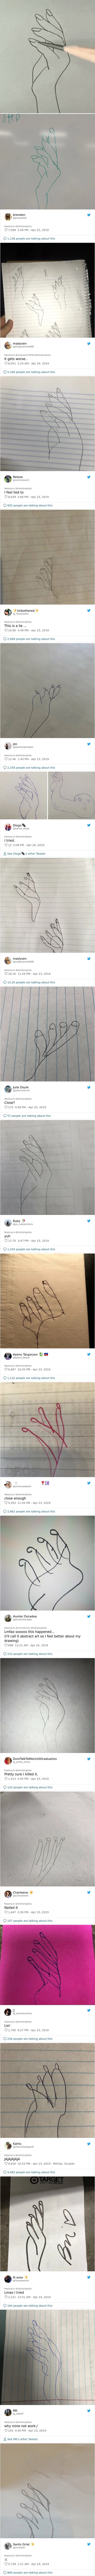 Ljudi su pogledali viralni video koji objašnjava kako nacrtati ruku, pokazali su svoje urnebesne promašaje